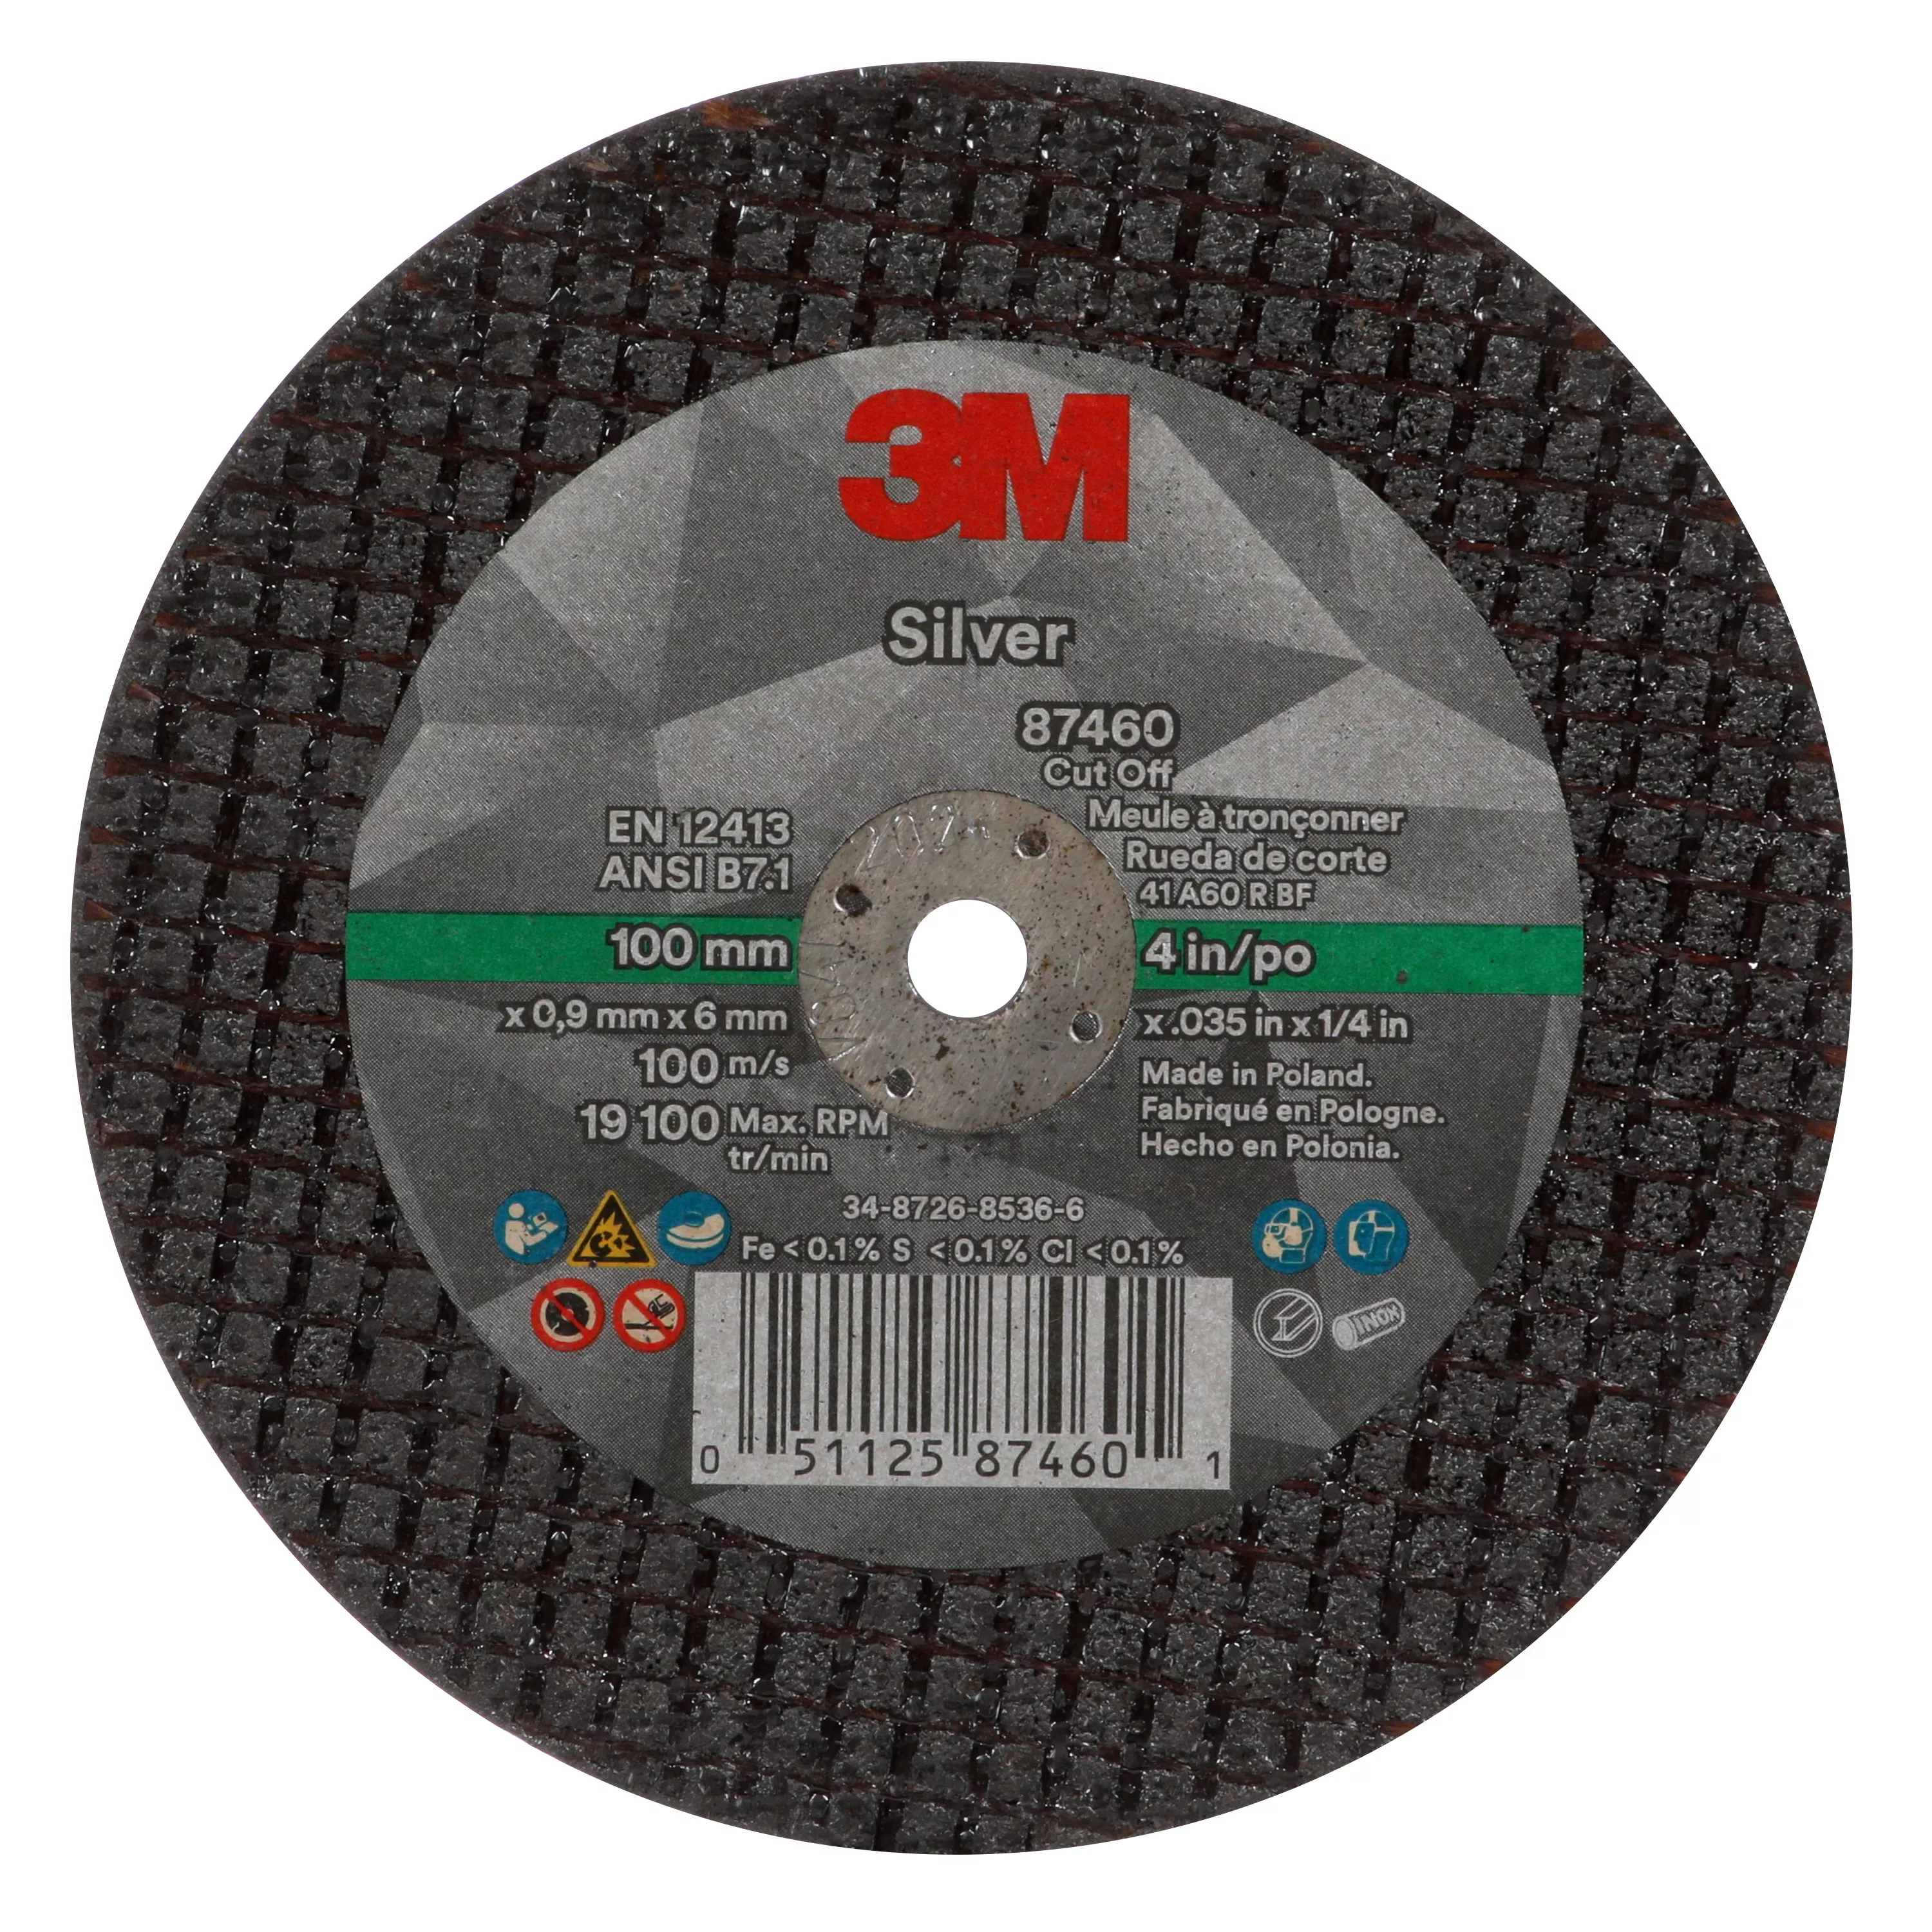 3M™ Silver Cut-Off Wheel, 87460, T1, 4 in x .035 in x 1/4 in, 50 ea/Case